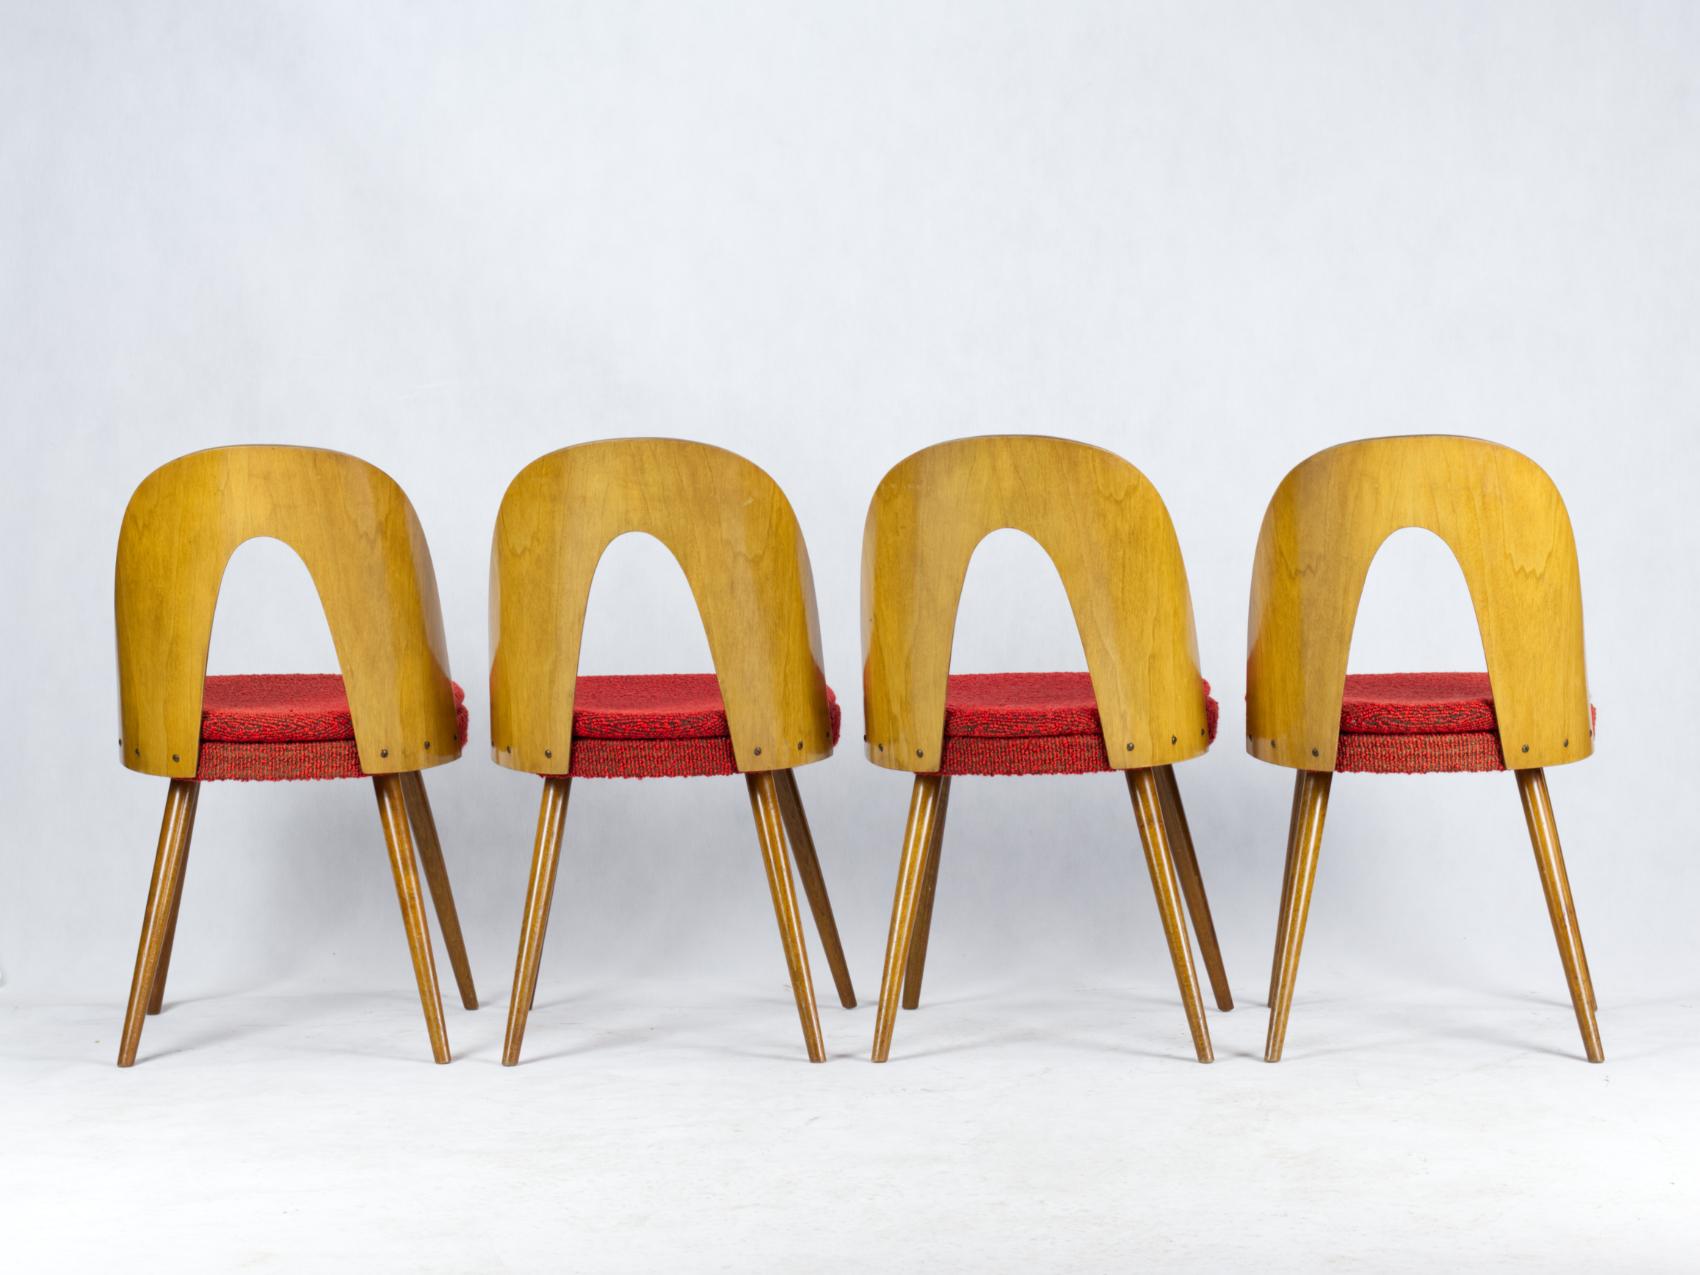 Czech Mid Century Dining Chairs by Antonín Šuman for Tatra Nabytok Np, 1960s For Sale